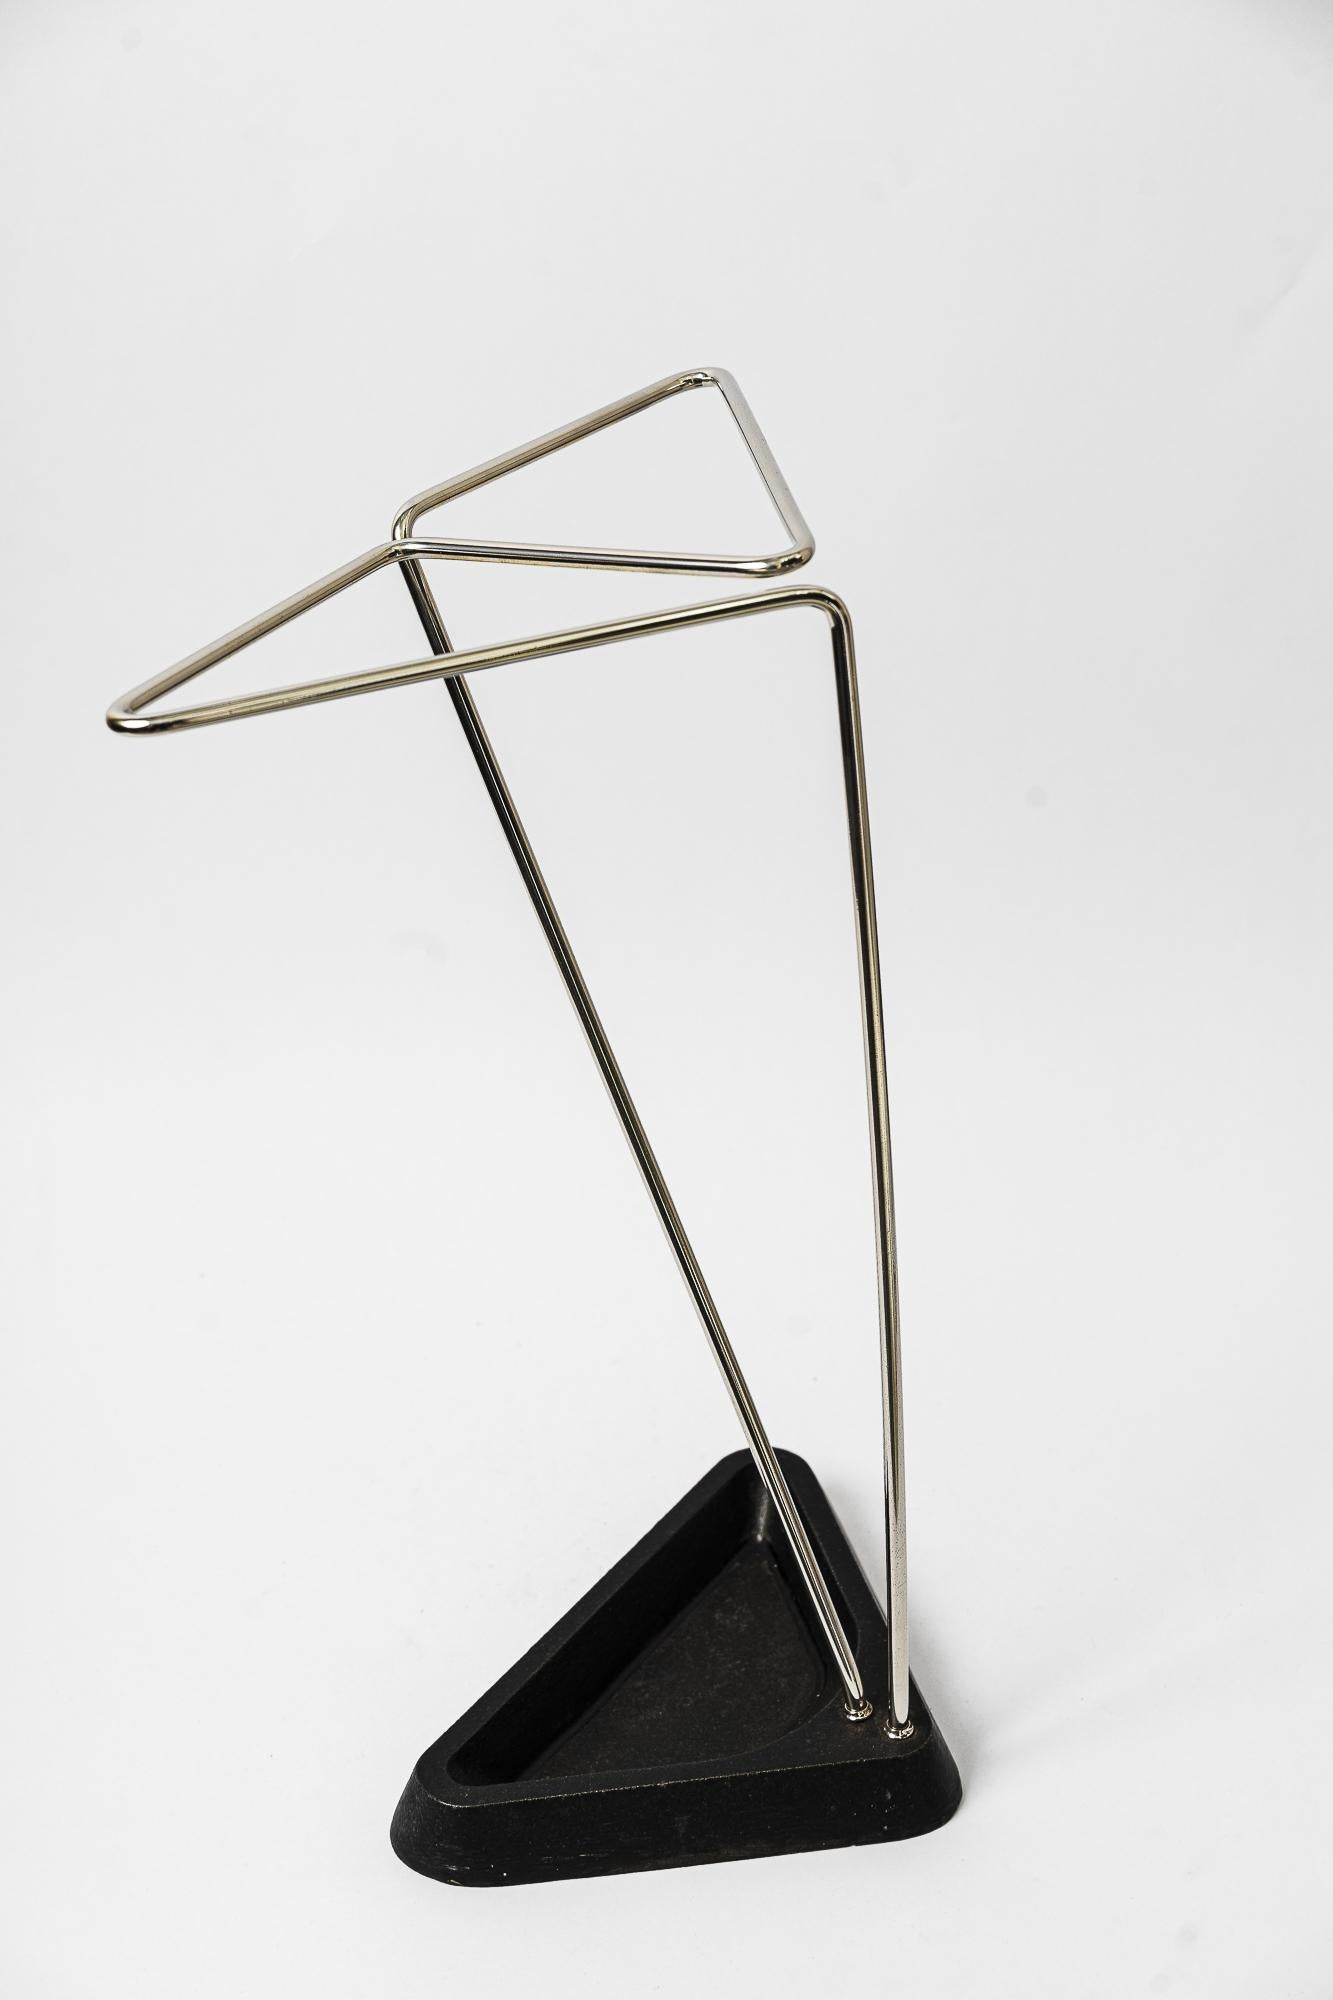 Schirmständer aus Nickel, 1950er Jahre
Vernickelt 
Geschwärztes Metall